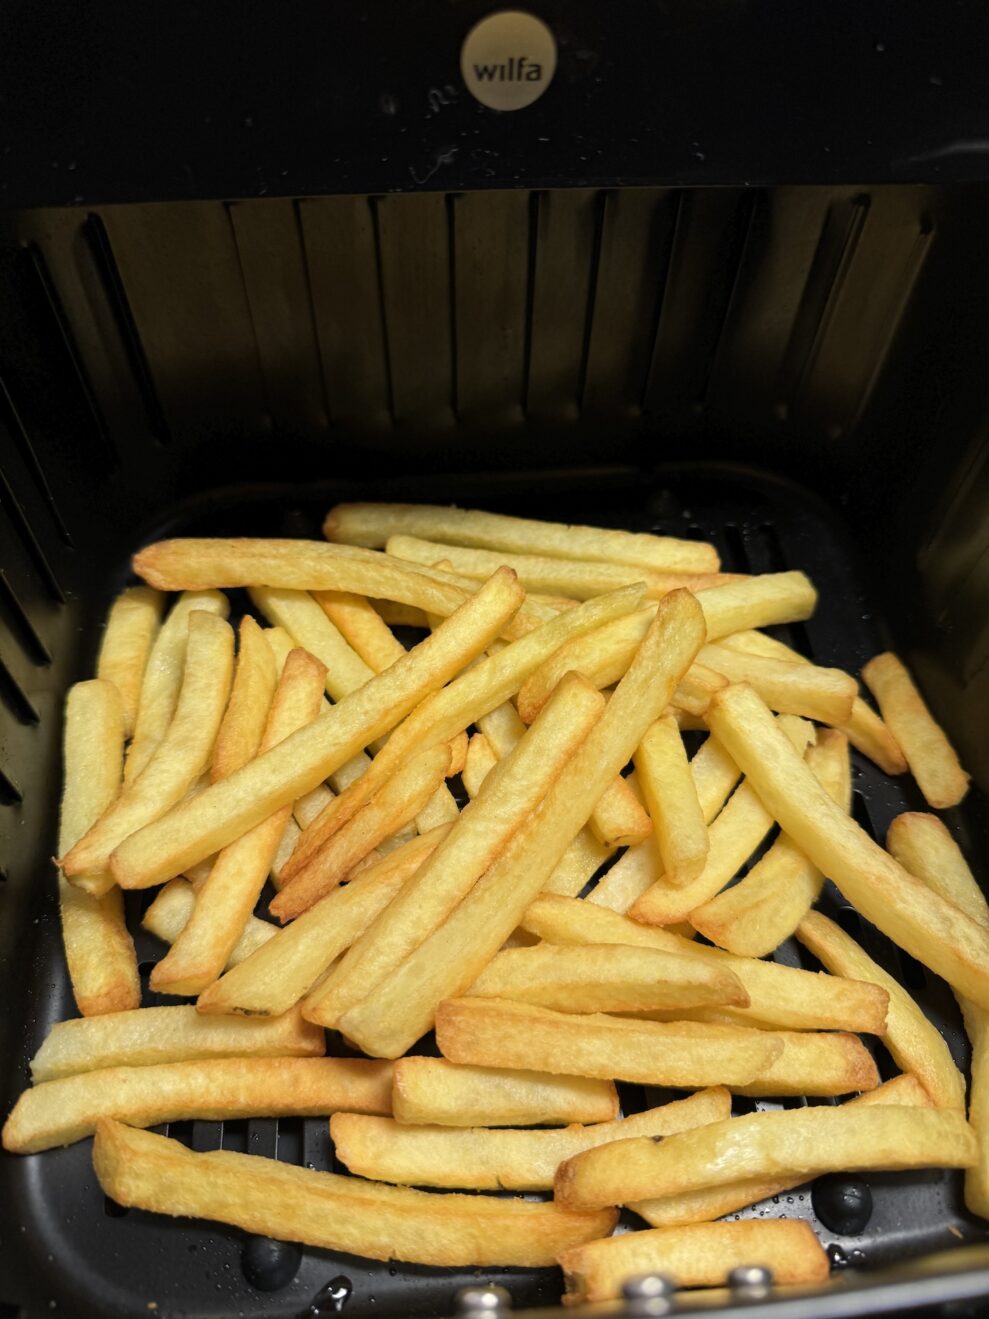 Wilfa Airfryer Crispier fries web